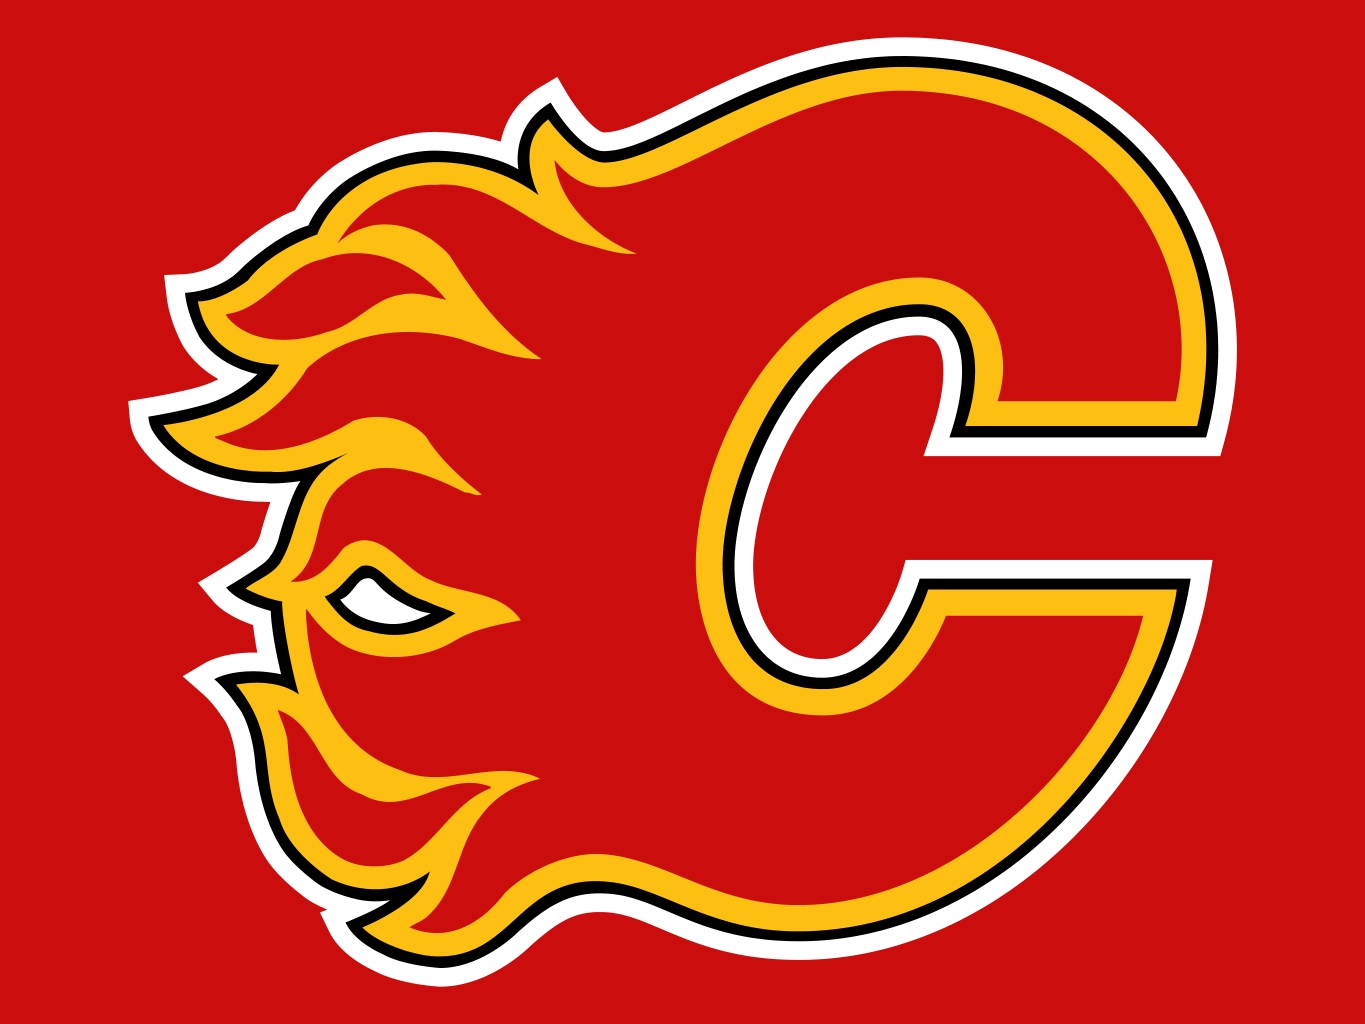 Calgary Flames vs LA Kings